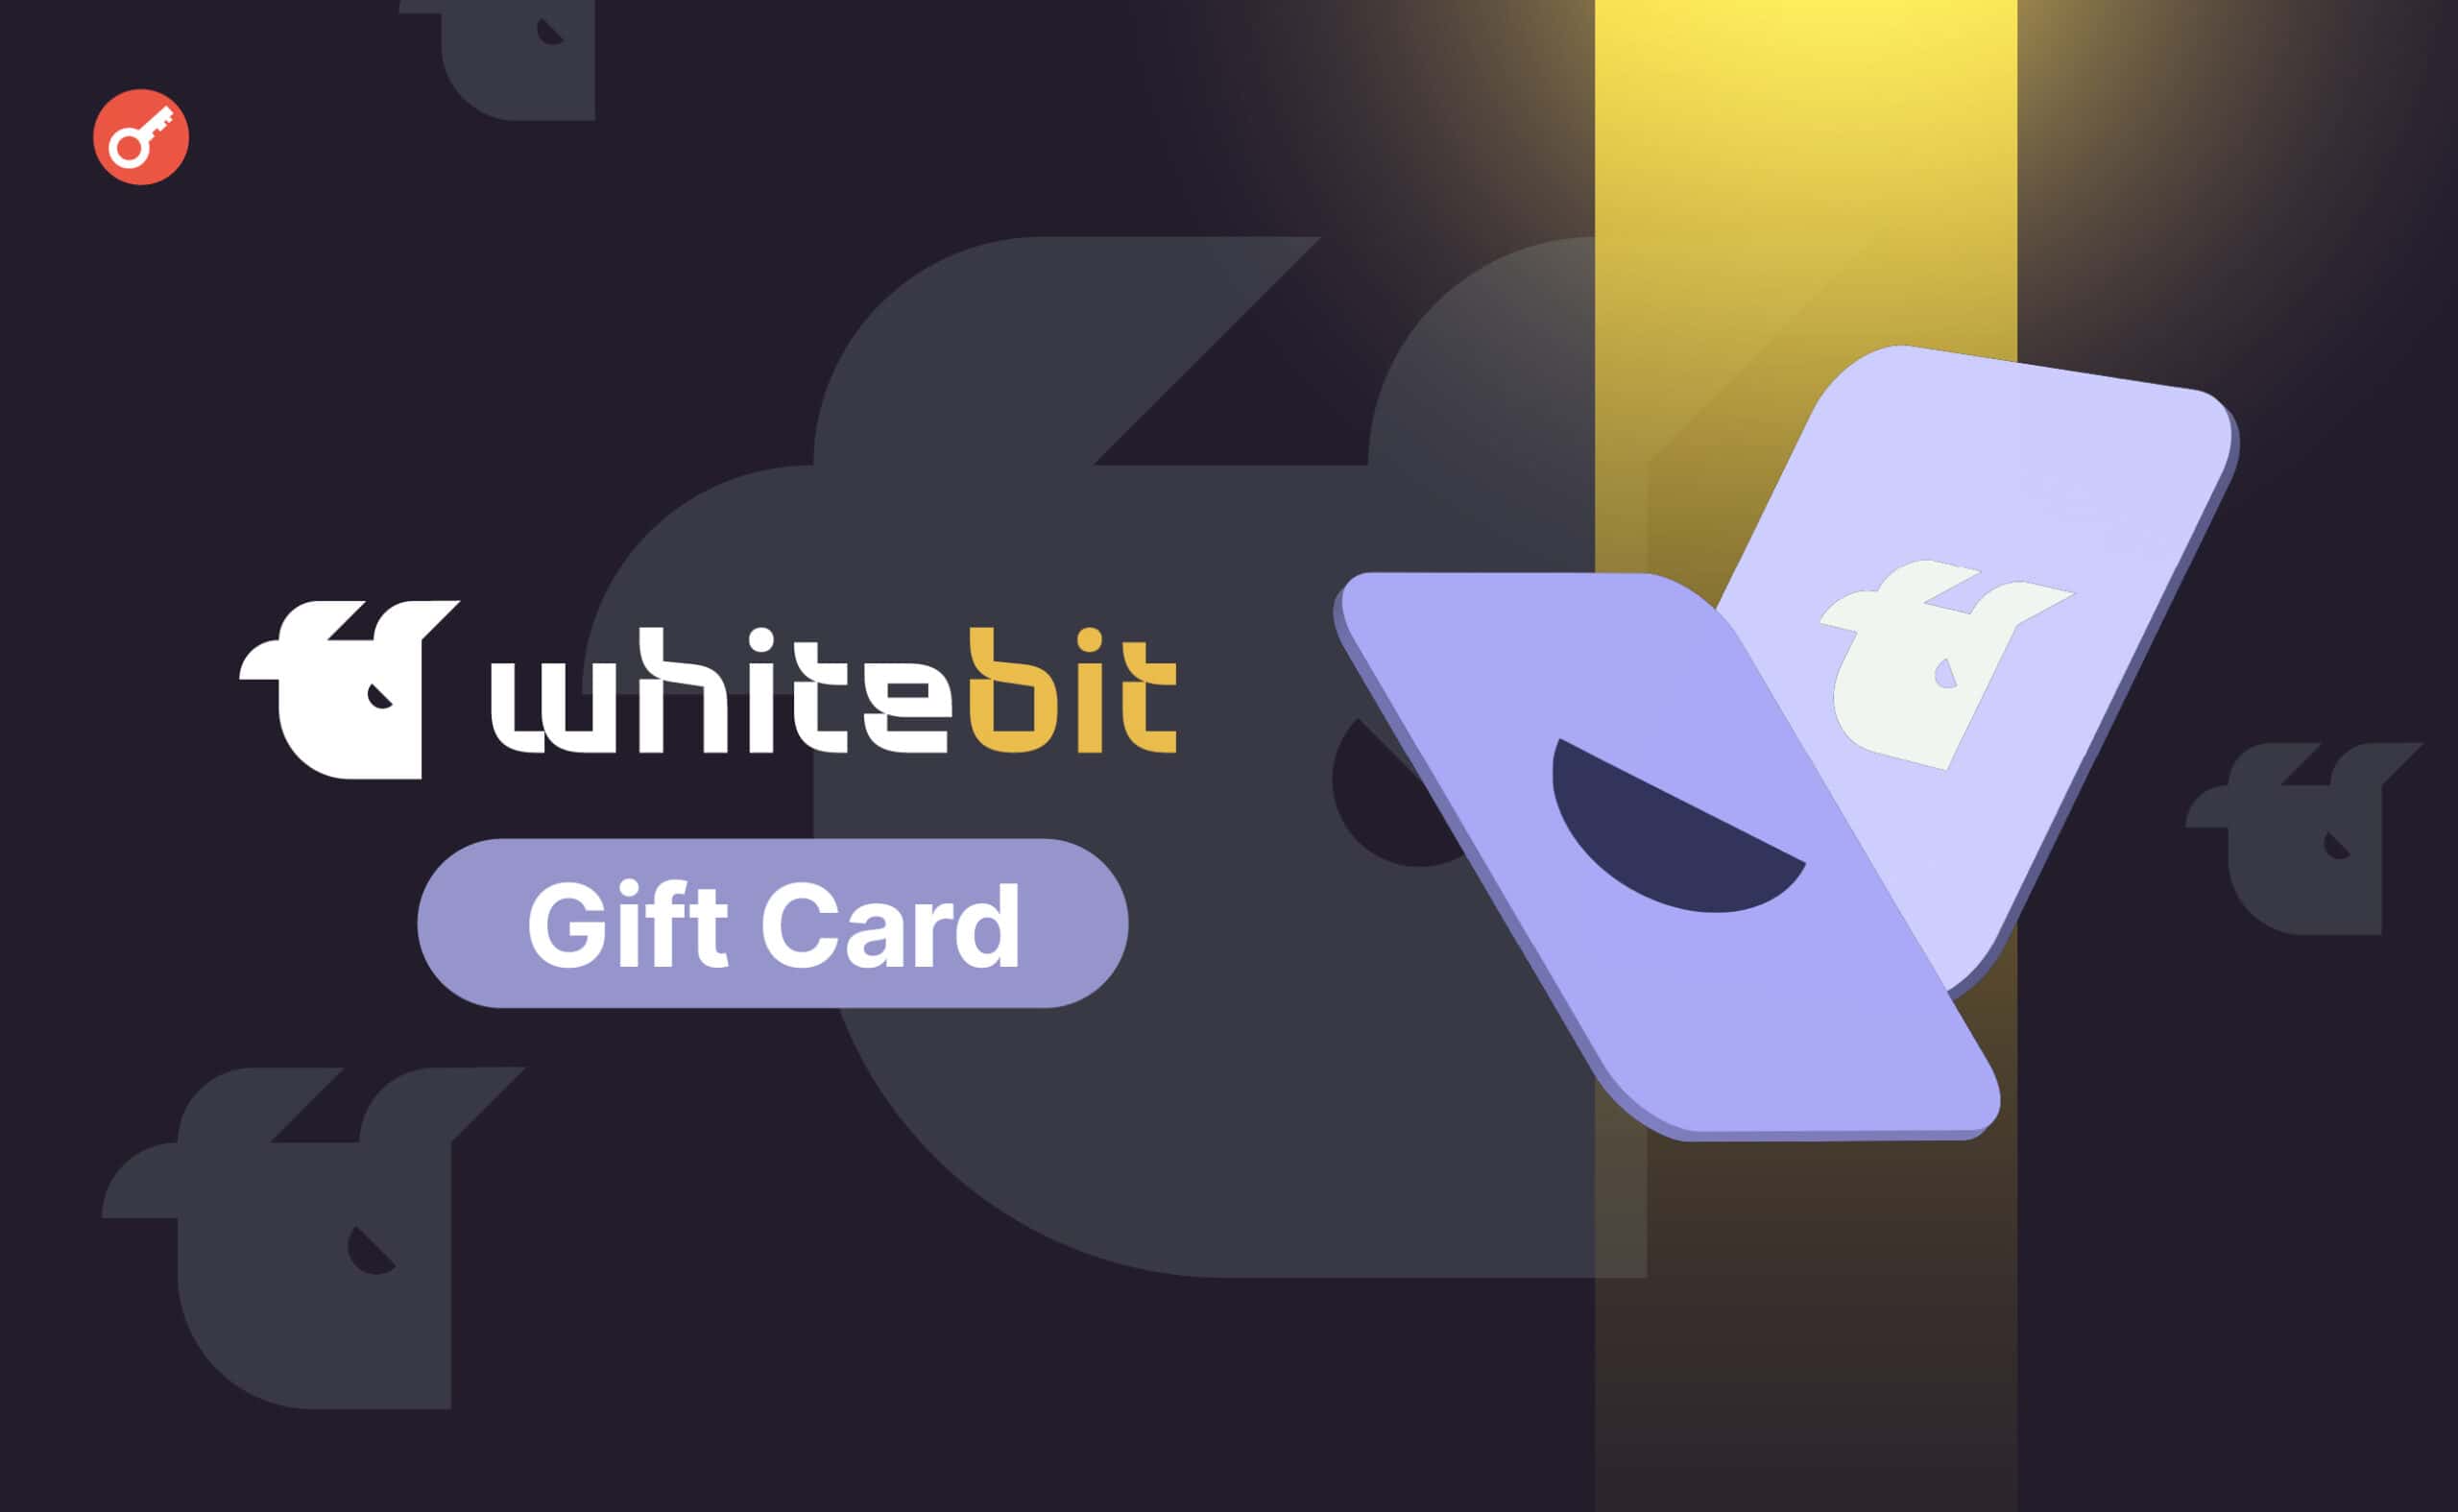 WhiteBIT додала подарункові картки з оплатою у криптовалютах. Головний колаж новини.